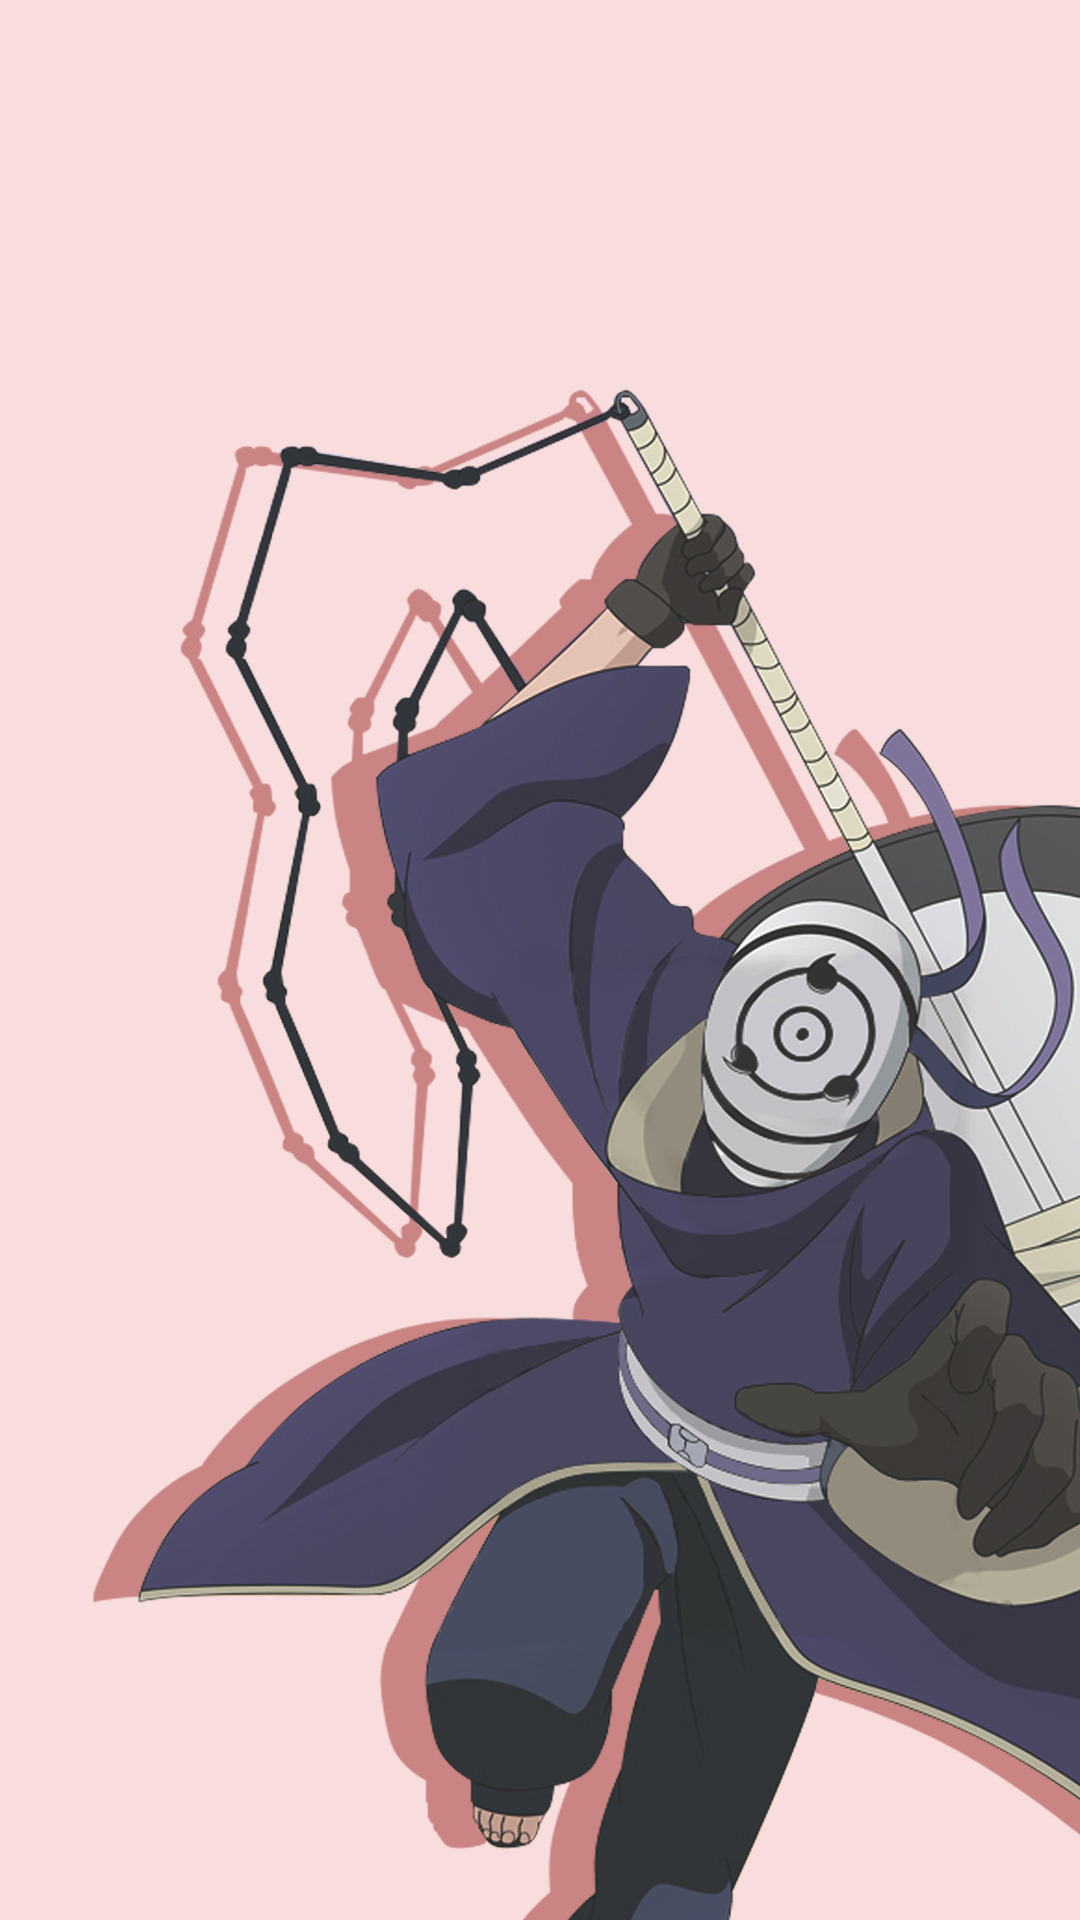 Obito Uchiha War Mask , HD Wallpaper & Backgrounds